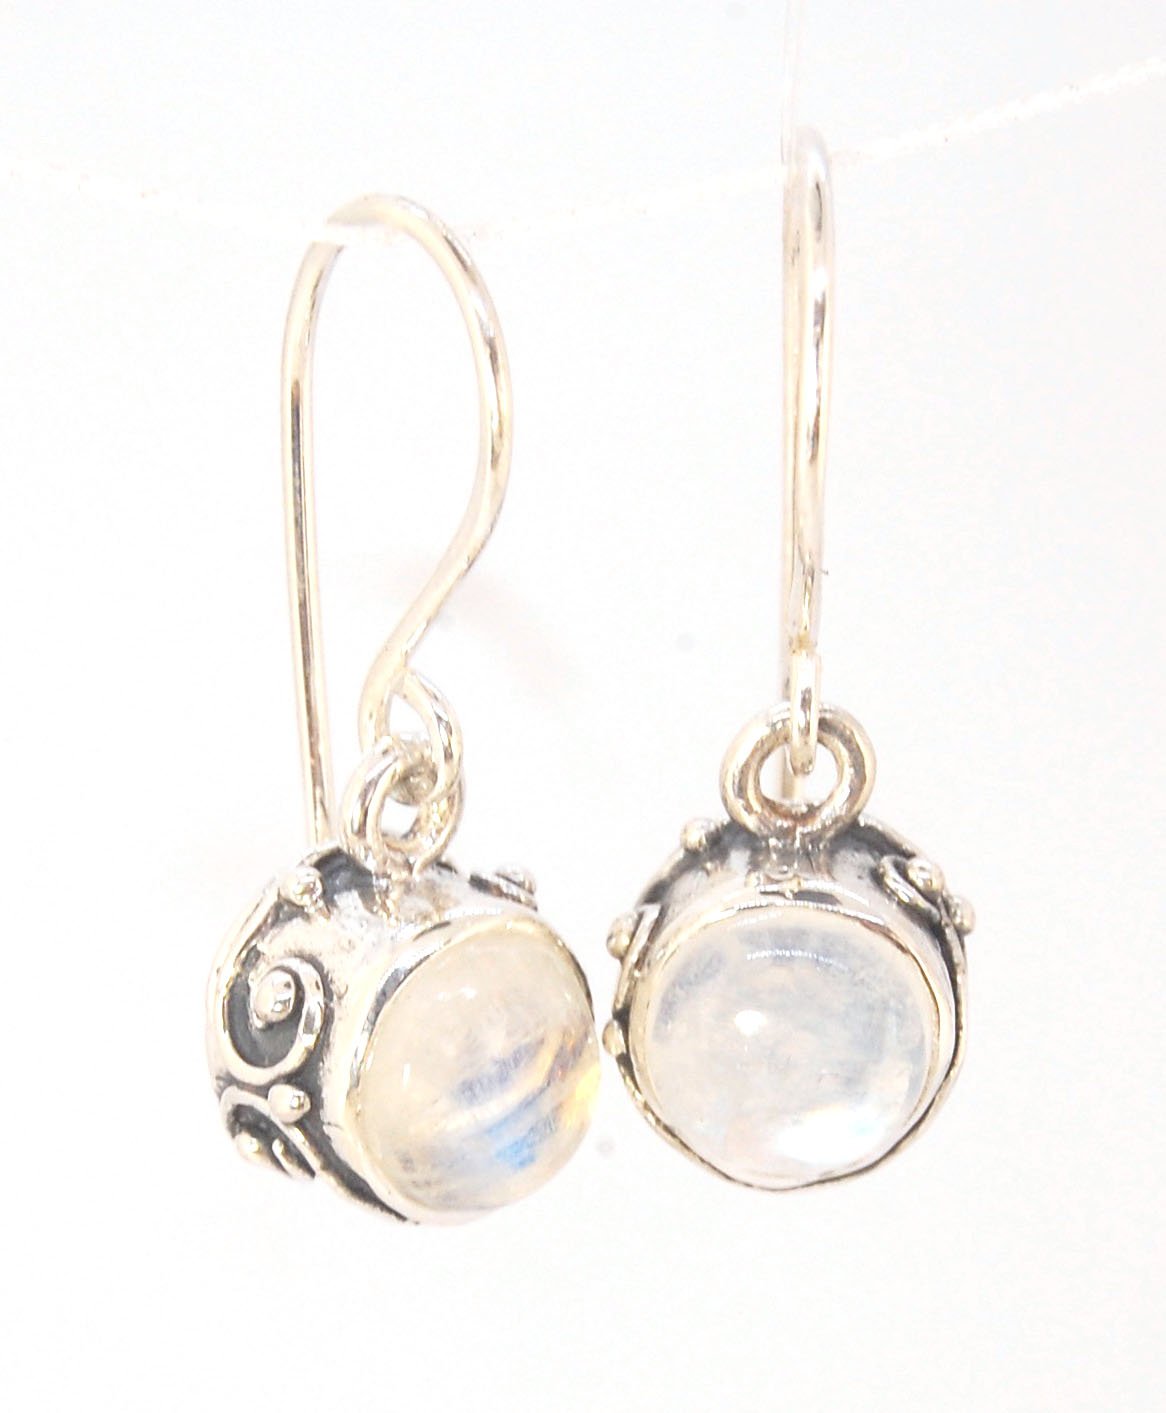 Solid Hoop Post Earrings - Medium - in Sterling — SUSAN McDONOUGH JEWELRY  Handmade Fine Jewelry